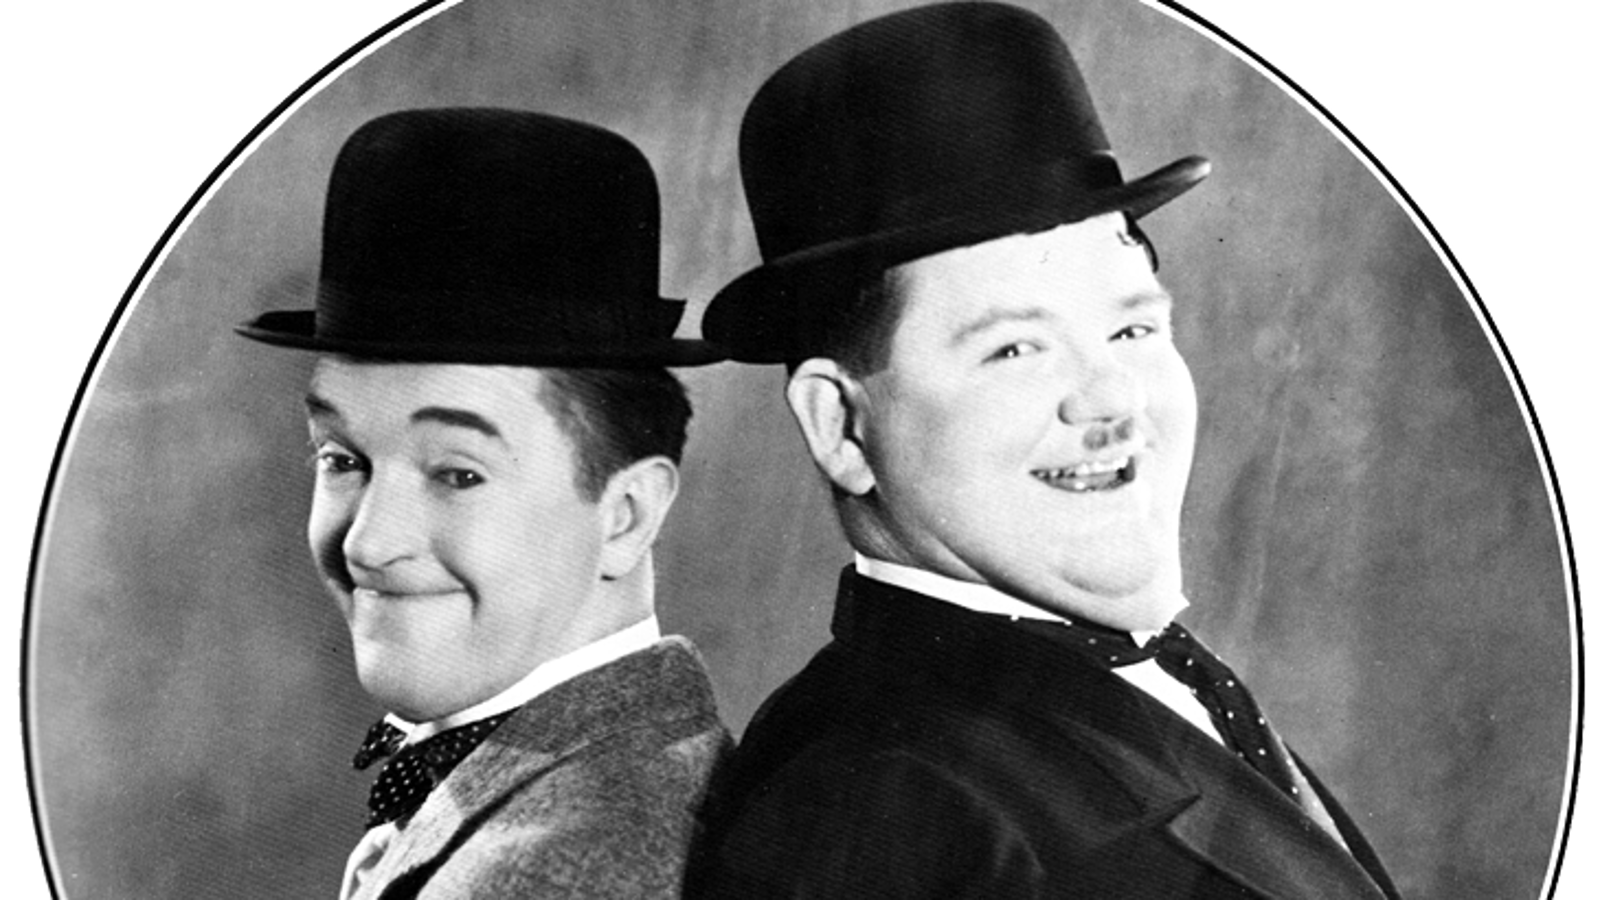 Kuvassa ovat vasemmalla Stan Laurel ja oikealla Oliver Hardy kasvokuvissa mustat hatut päässään. He ovat ruudutetun ympyrän sisällä ja hymyilevät.